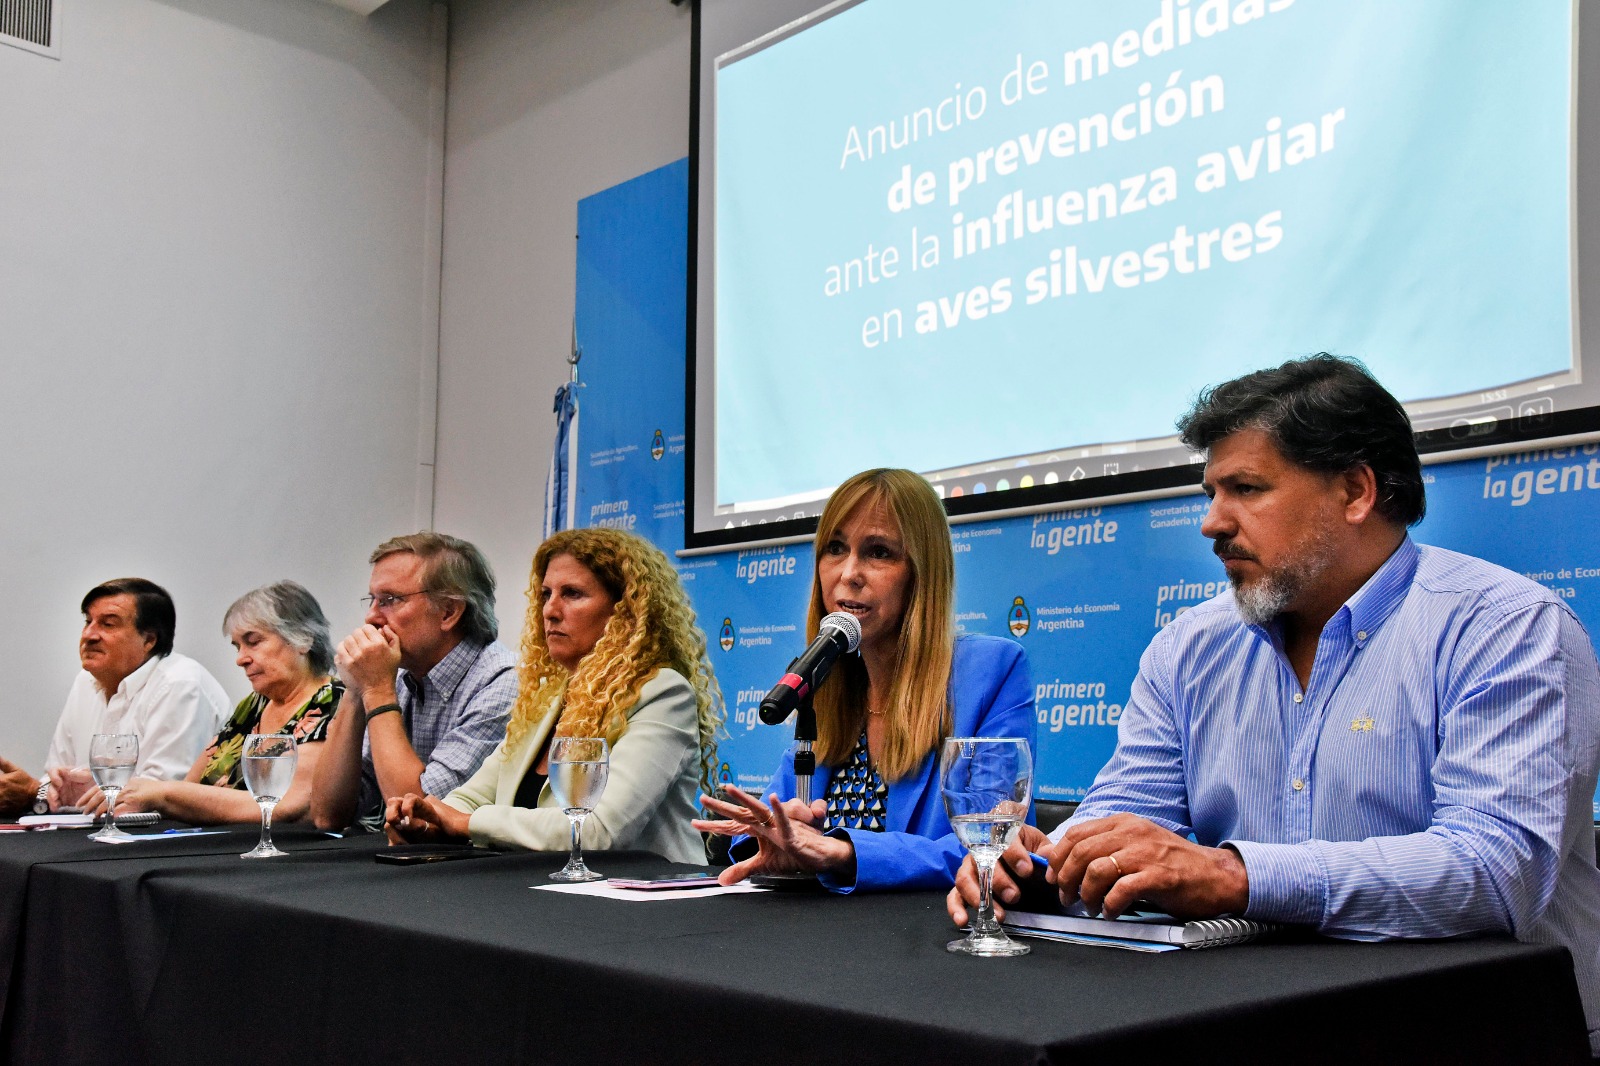 El Ministerio de Salud de la Nación emite recomendaciones ante la detección de un caso de influenza aviar en ave silvestre en Jujuy